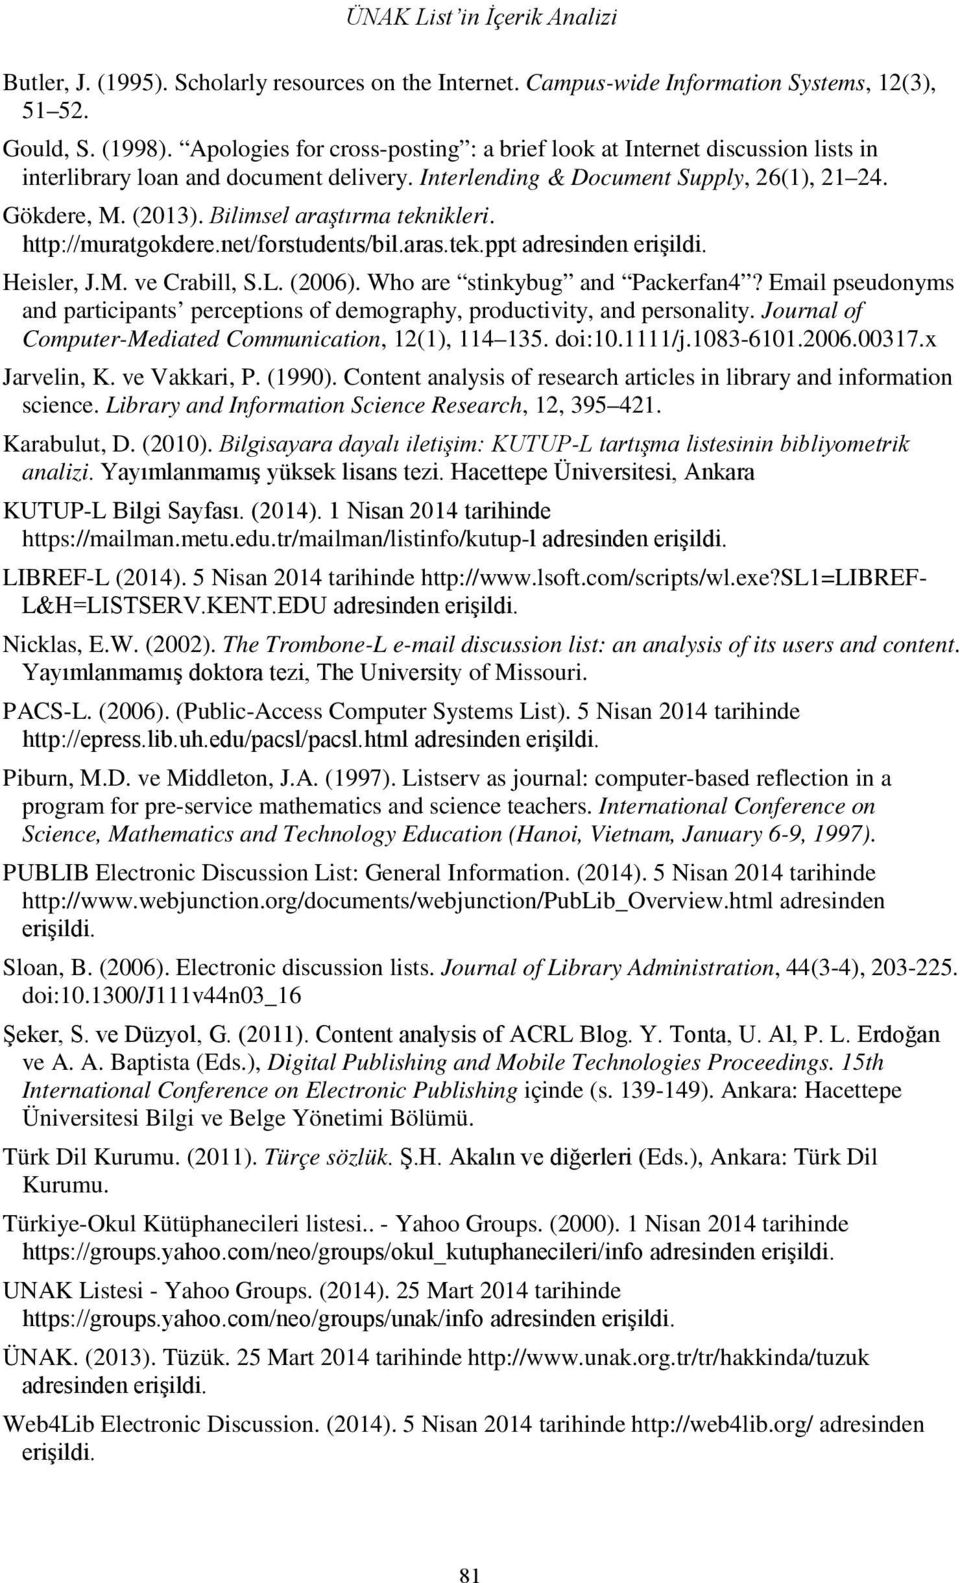 Bilimsel araştırma teknikleri. http://muratgokdere.net/forstudents/bil.aras.tek.ppt adresinden erişildi. Heisler, J.M. ve Crabill, S.L. (2006). Who are stinkybug and Packerfan4?